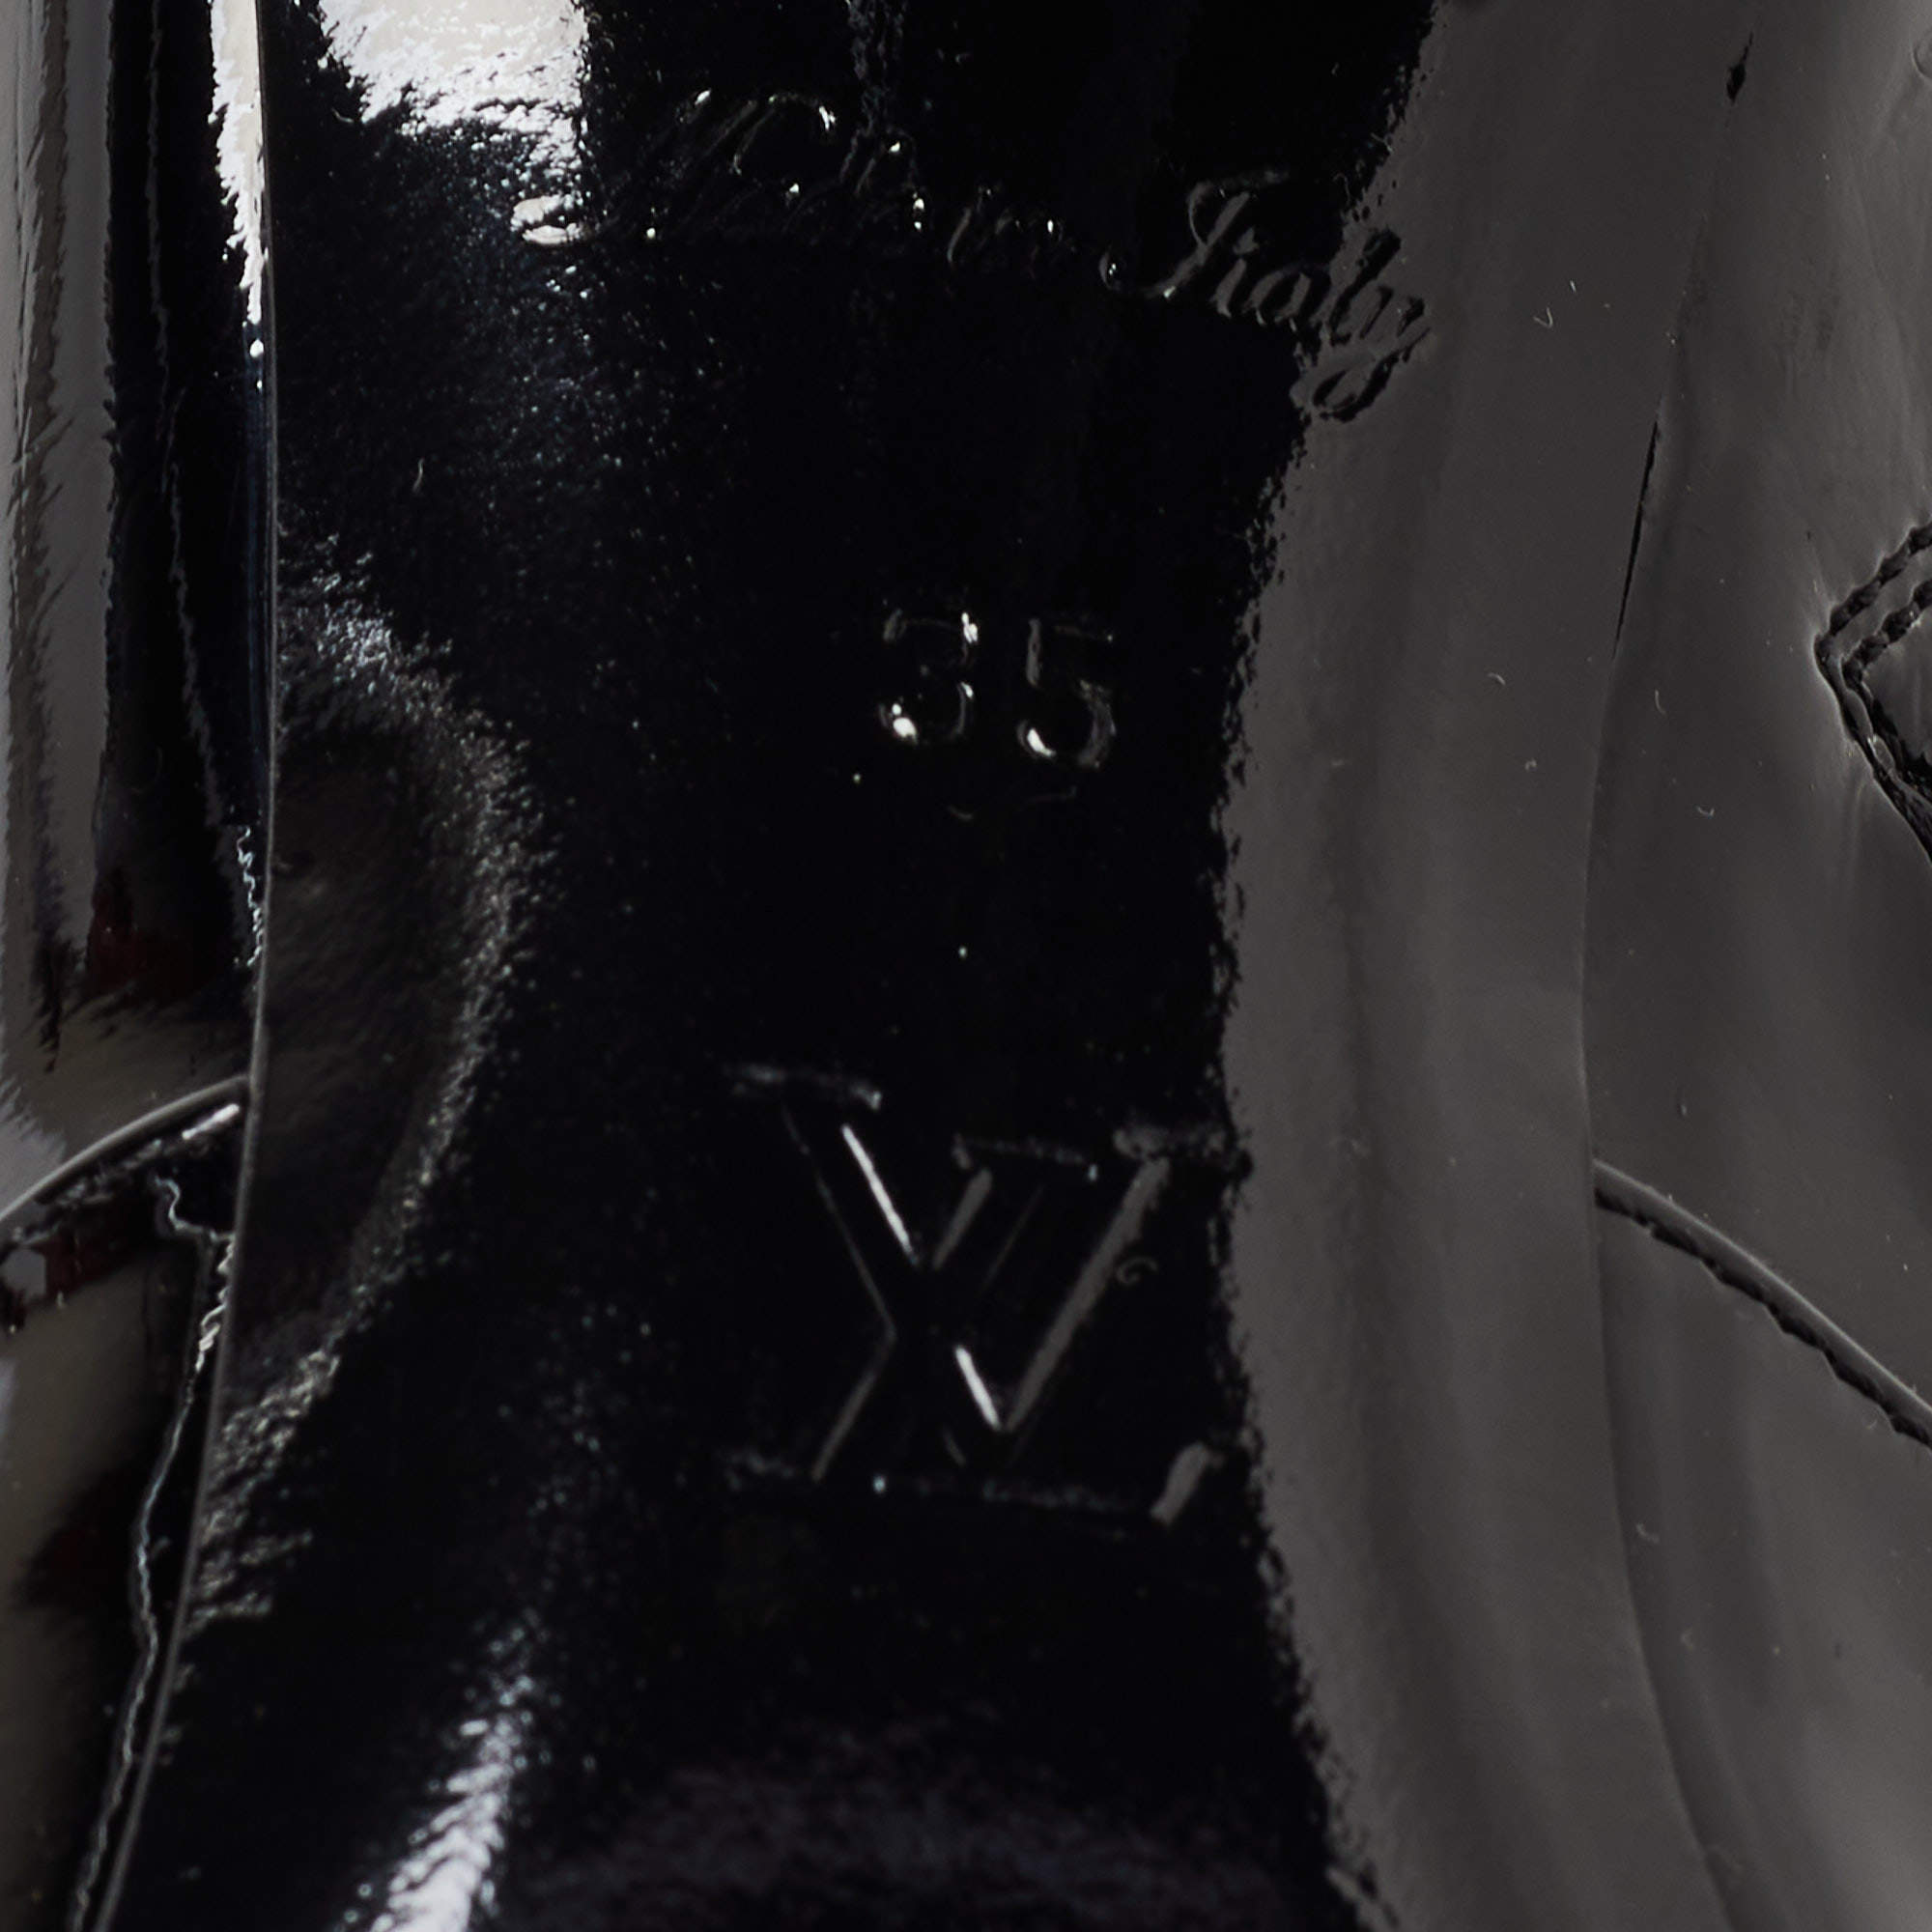 Louis Vuitton Black Leather Lace Up Ankle Boots Size 35 Louis Vuitton | The  Luxury Closet